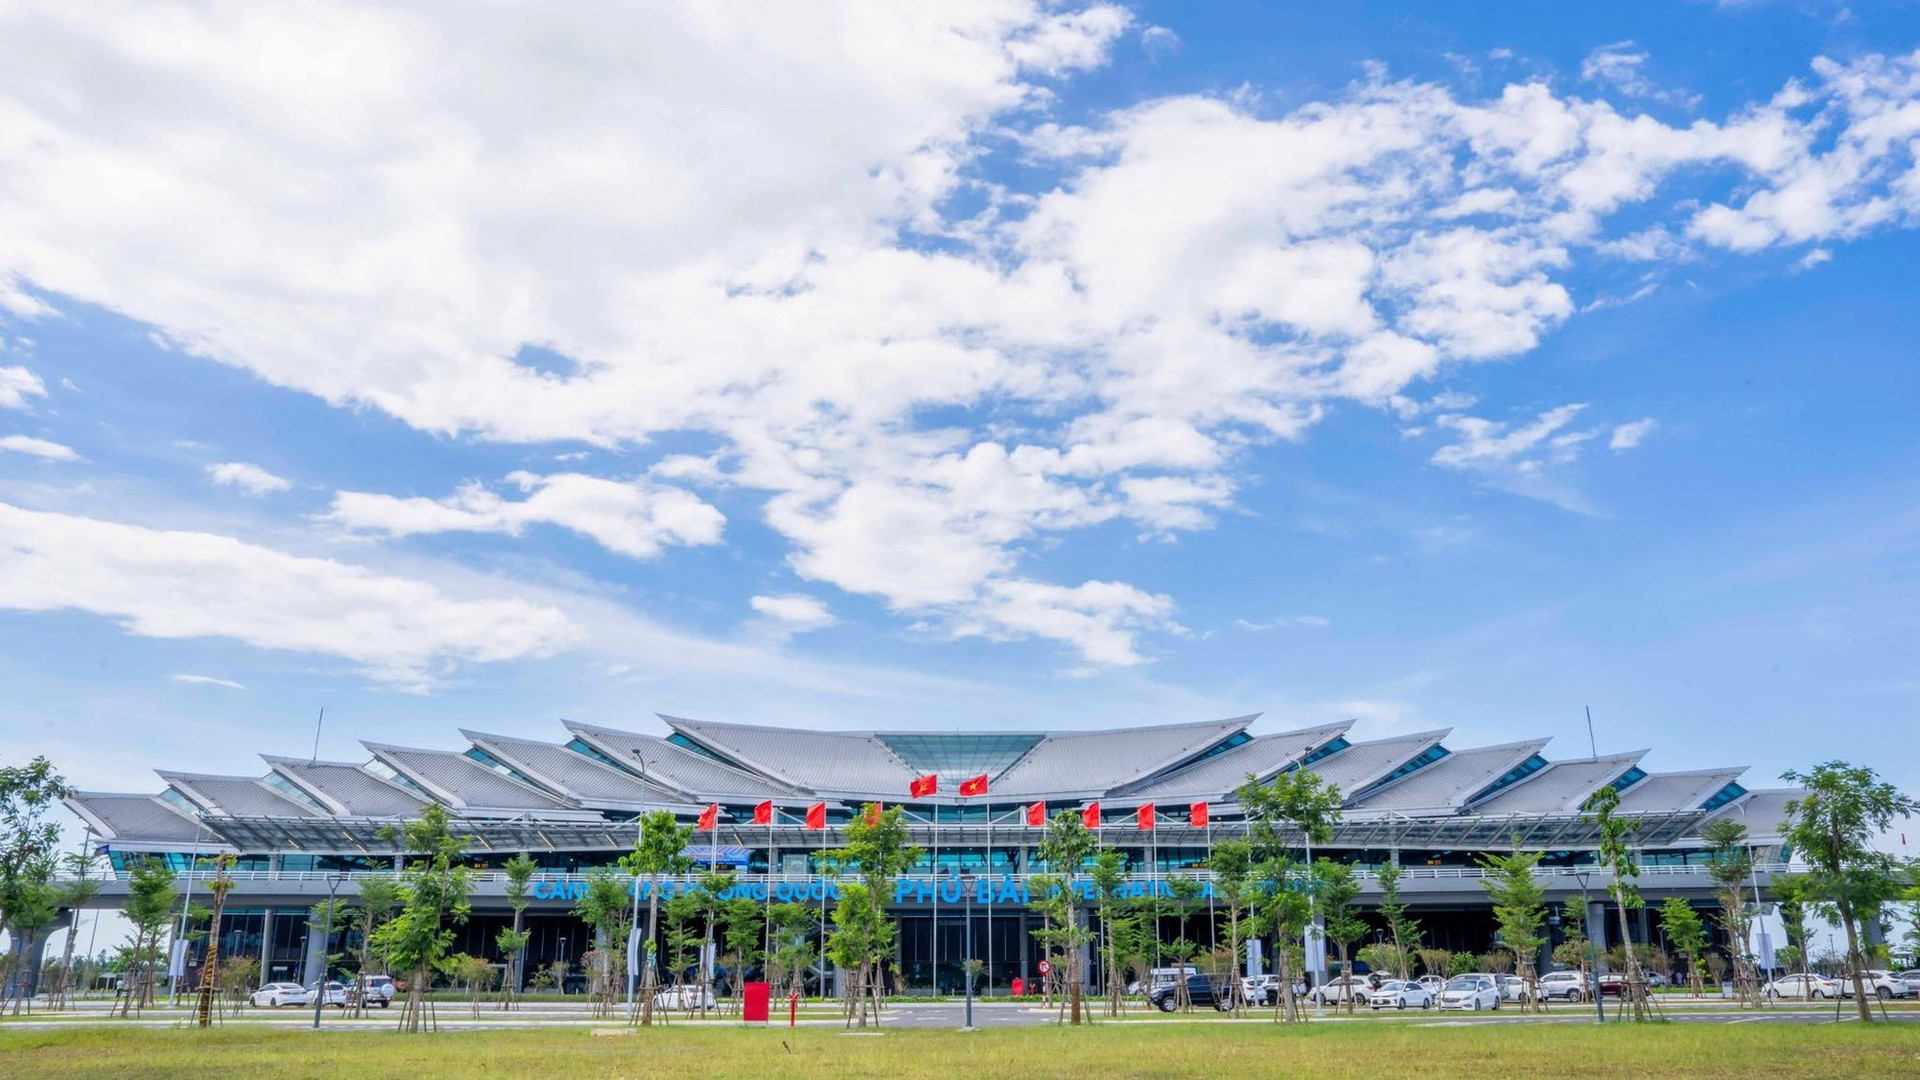 Ấn tượng hình ảnh kiến trúc sân bay 'độc nhất vô nhị' ở Việt Nam ảnh 1